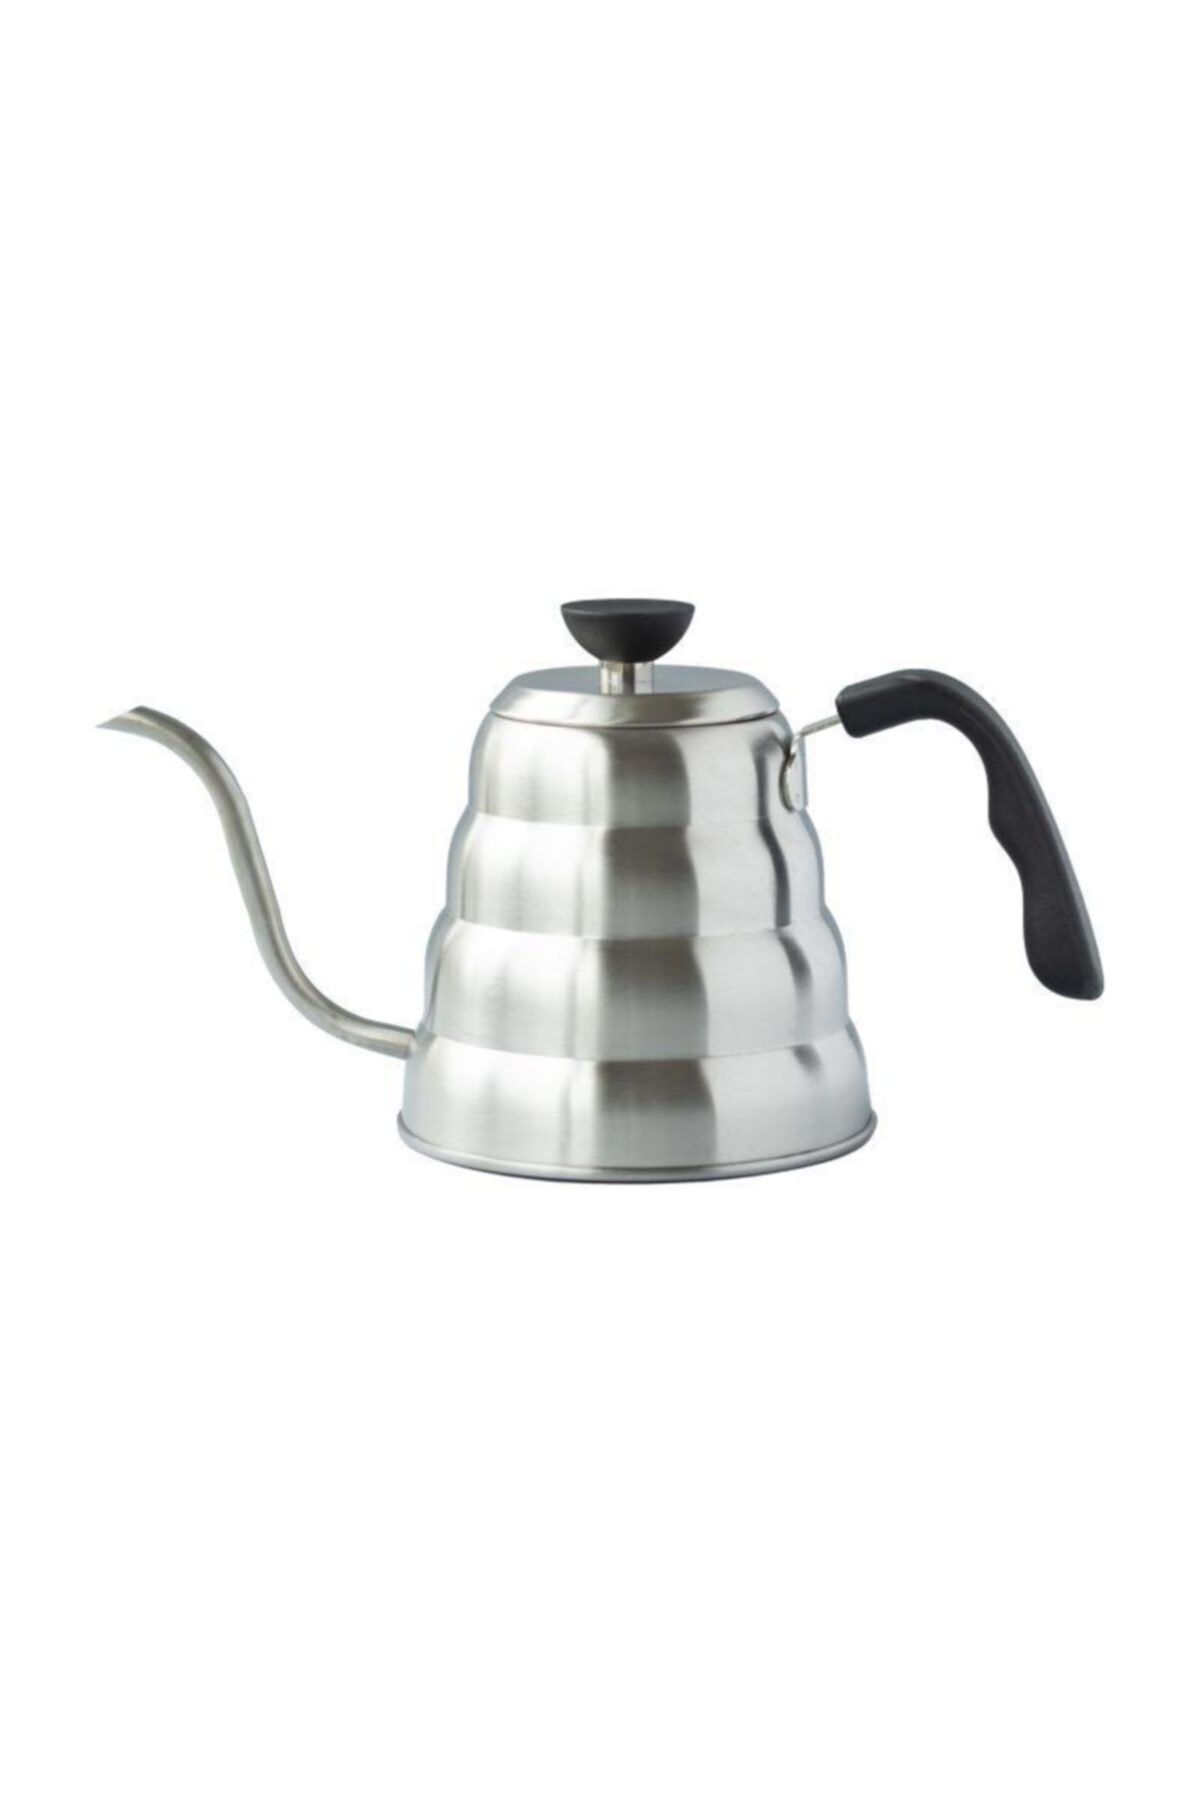 Black Goat Barista Coffee Pot Kettle - Filtre Kahve Demliği (ıbrik) 1200 ml